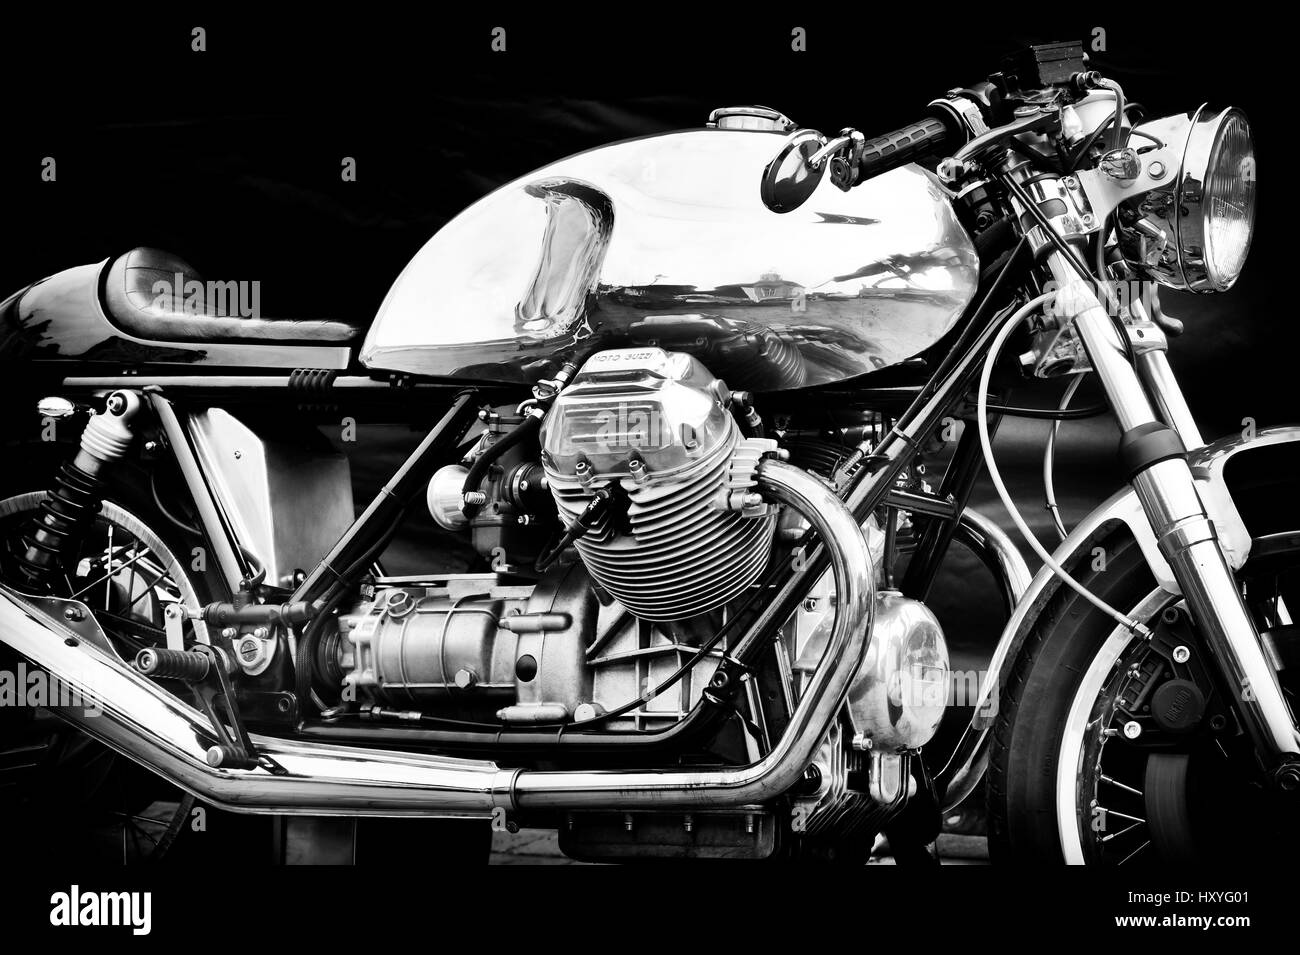 Moto Guzzi café racer moto. Moto italienne classique. Le noir et blanc Banque D'Images